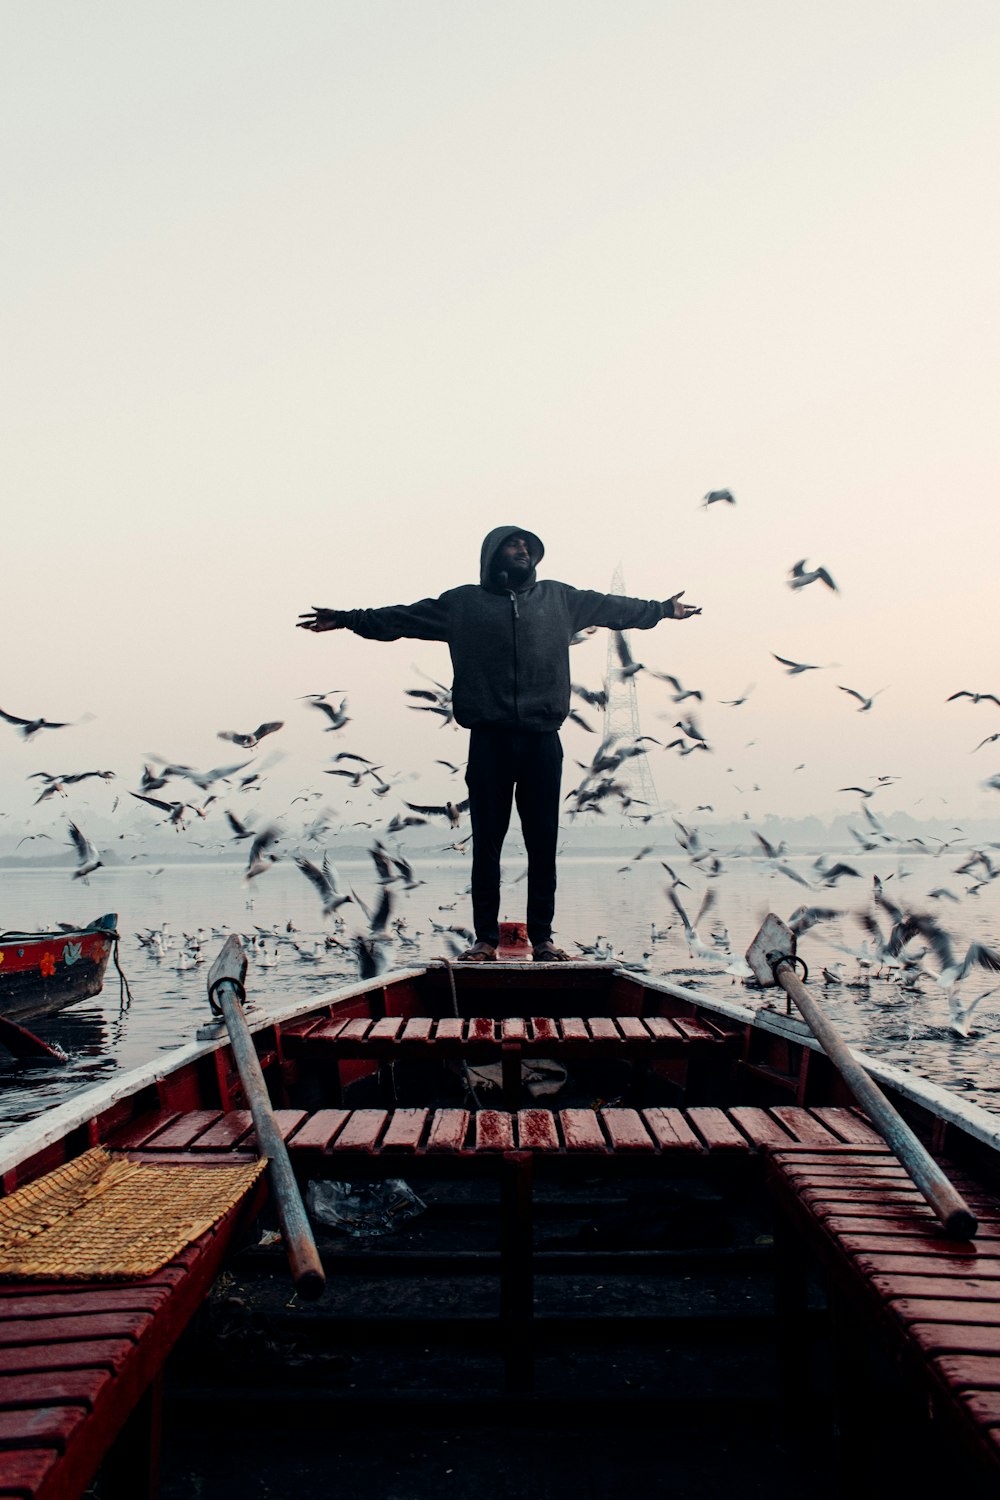 Un homme debout sur un bateau entouré d’oiseaux